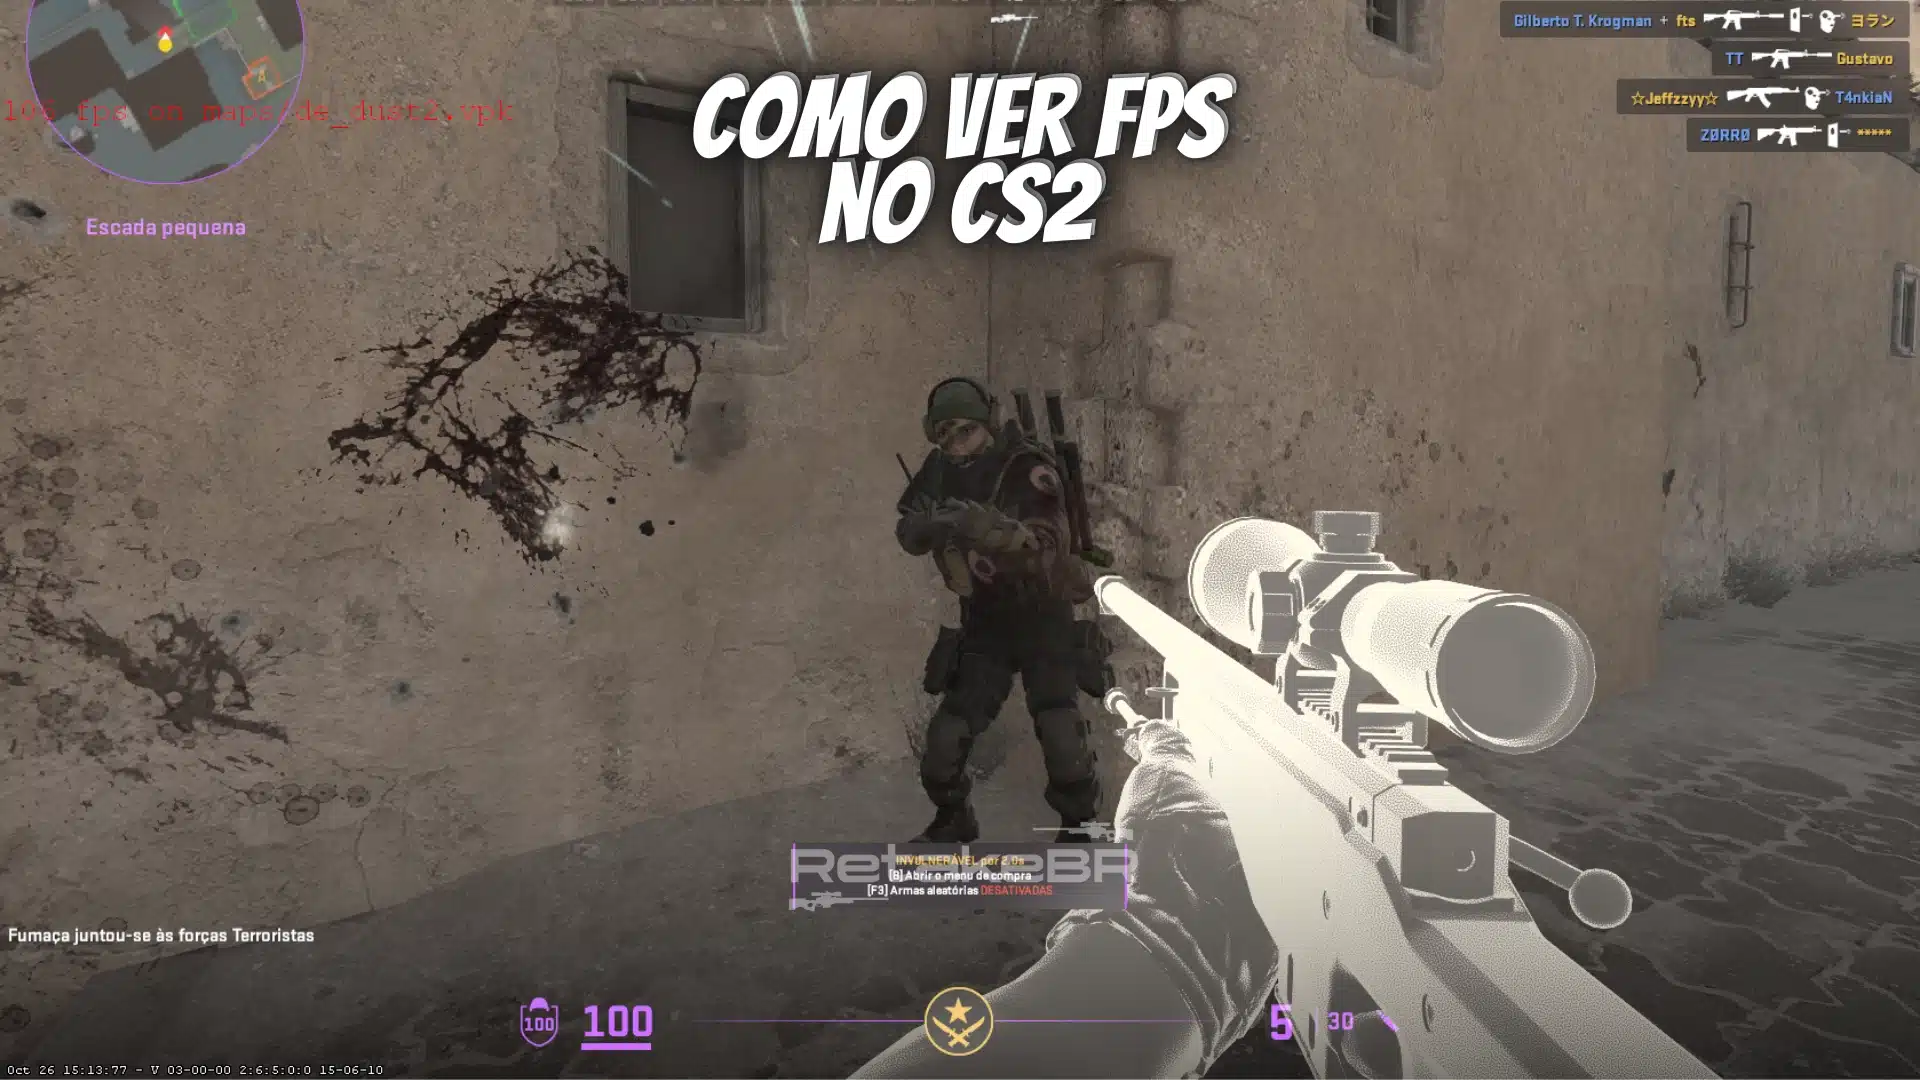 Counter Strike 2 é gratuito? Veja os detalhes sobre o novo FPS